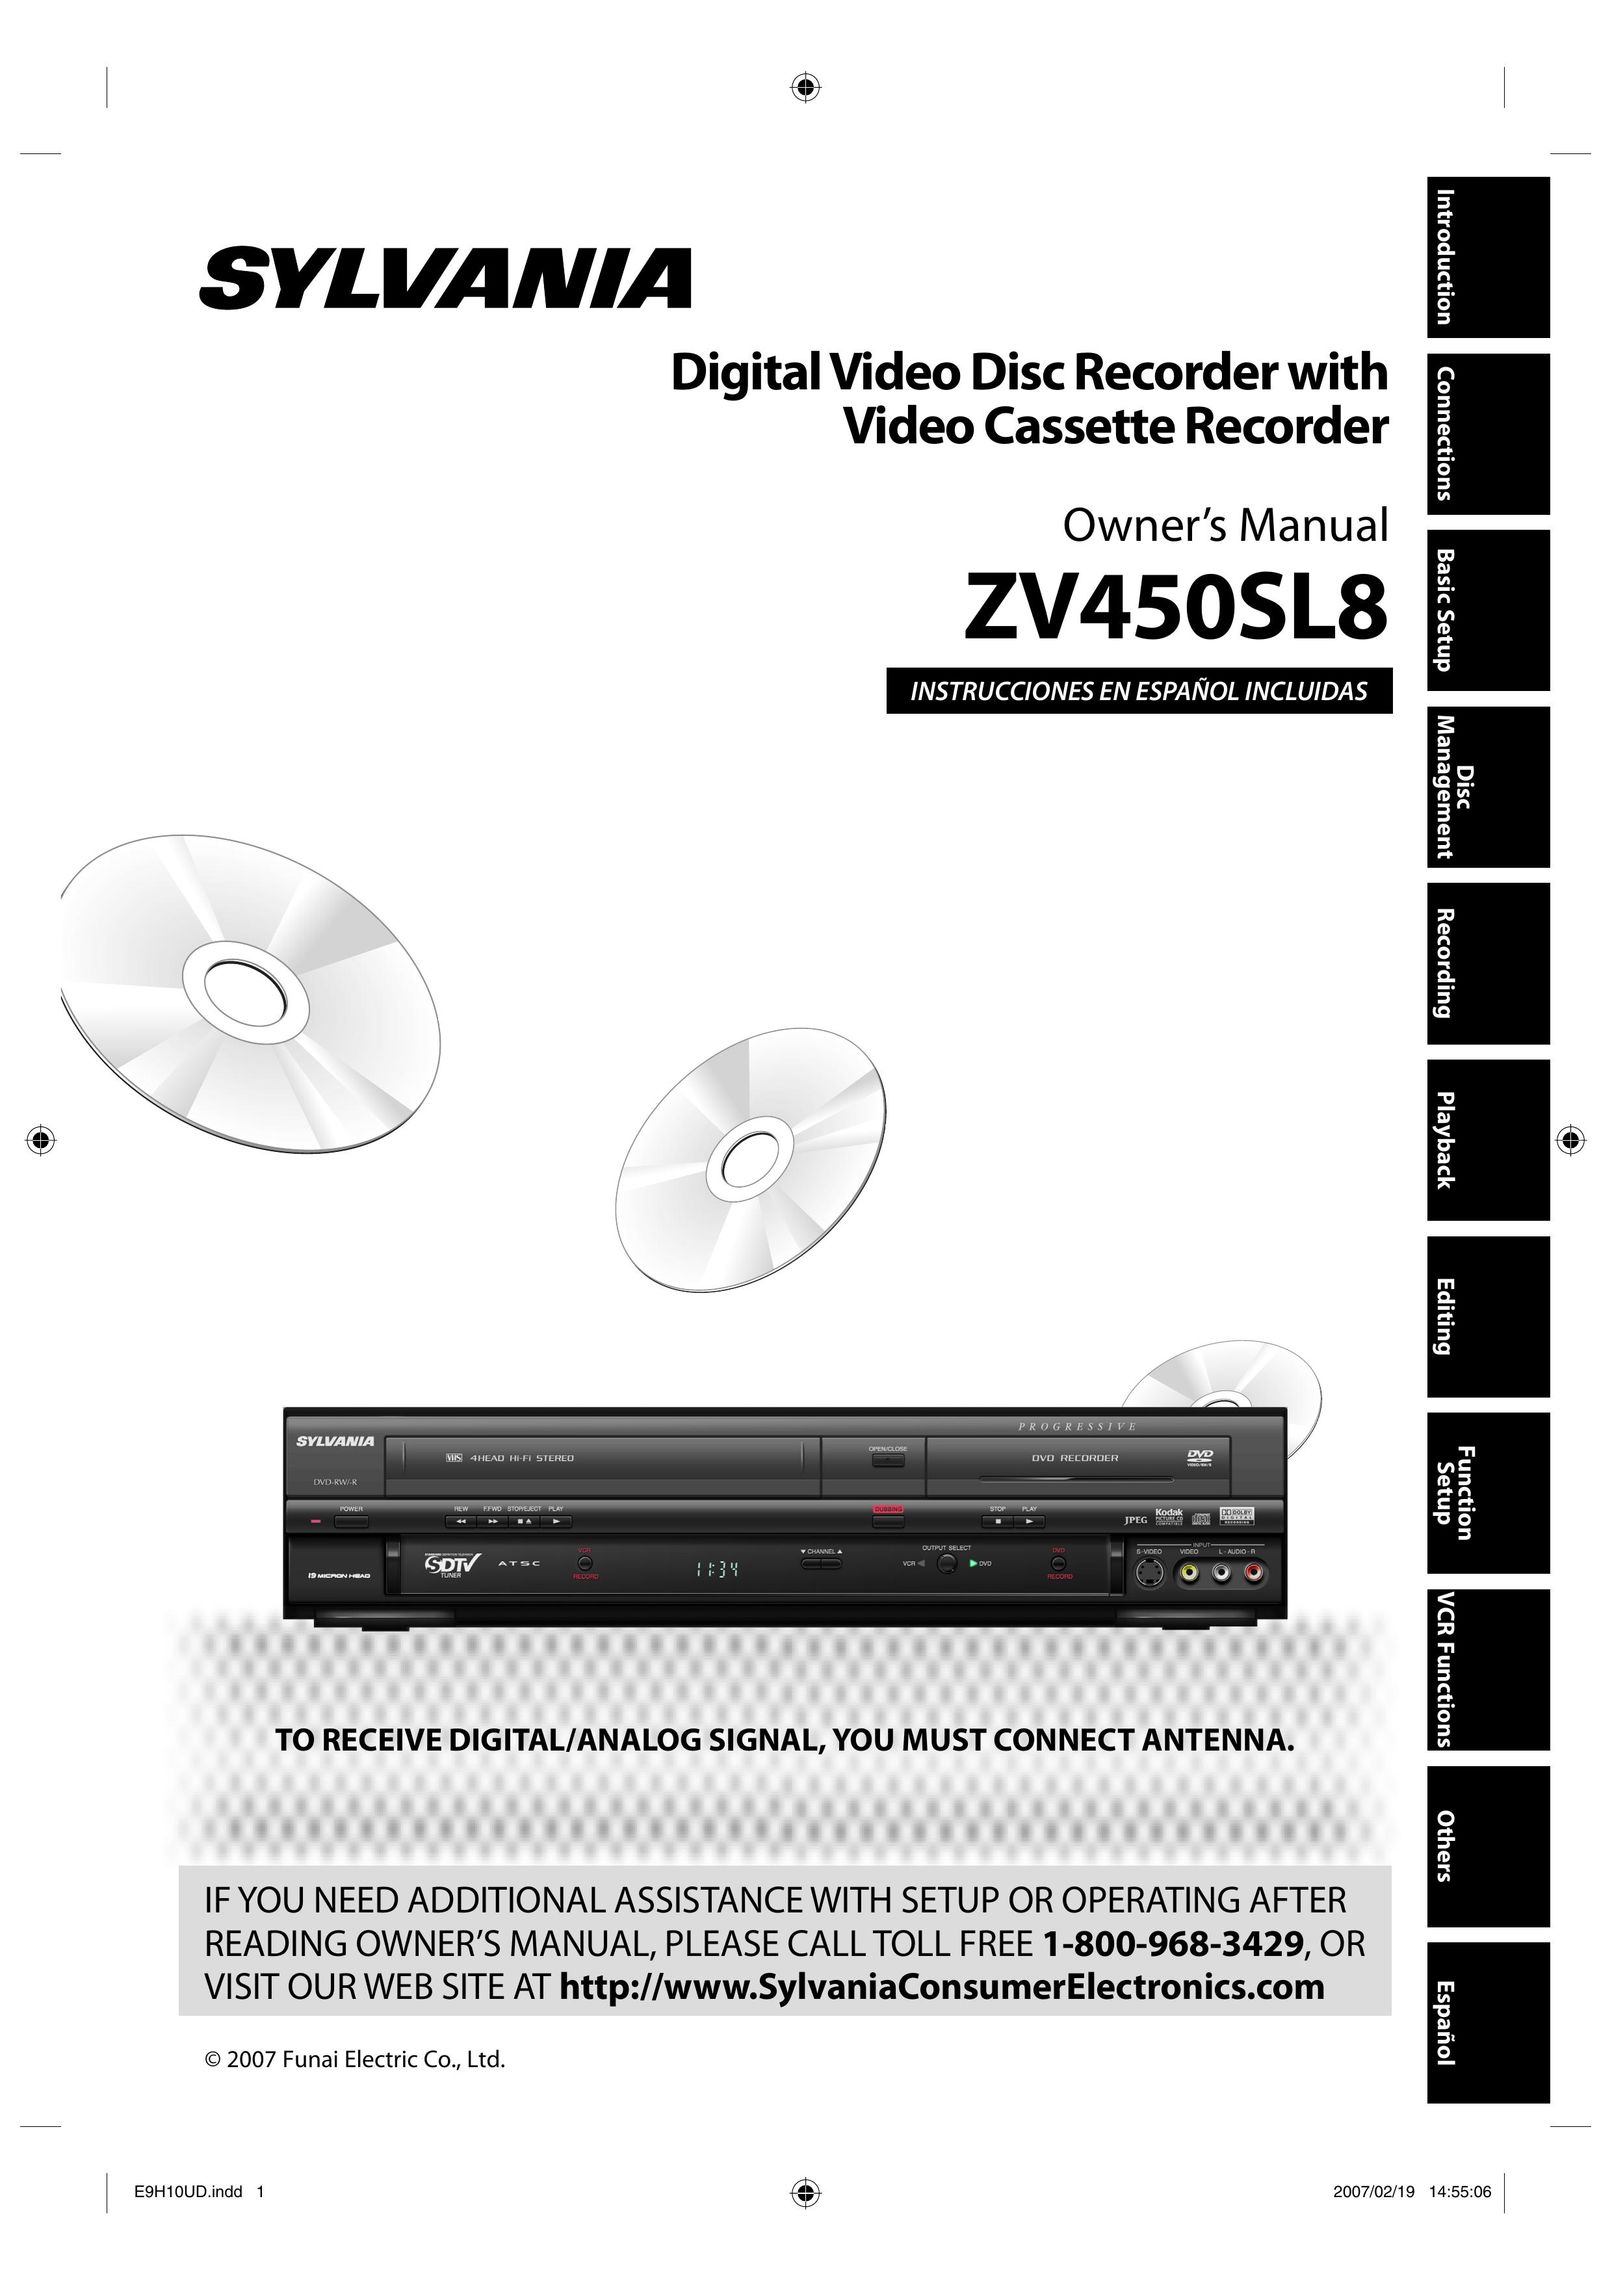 Sylvania ZV450SL8 DVR User Manual